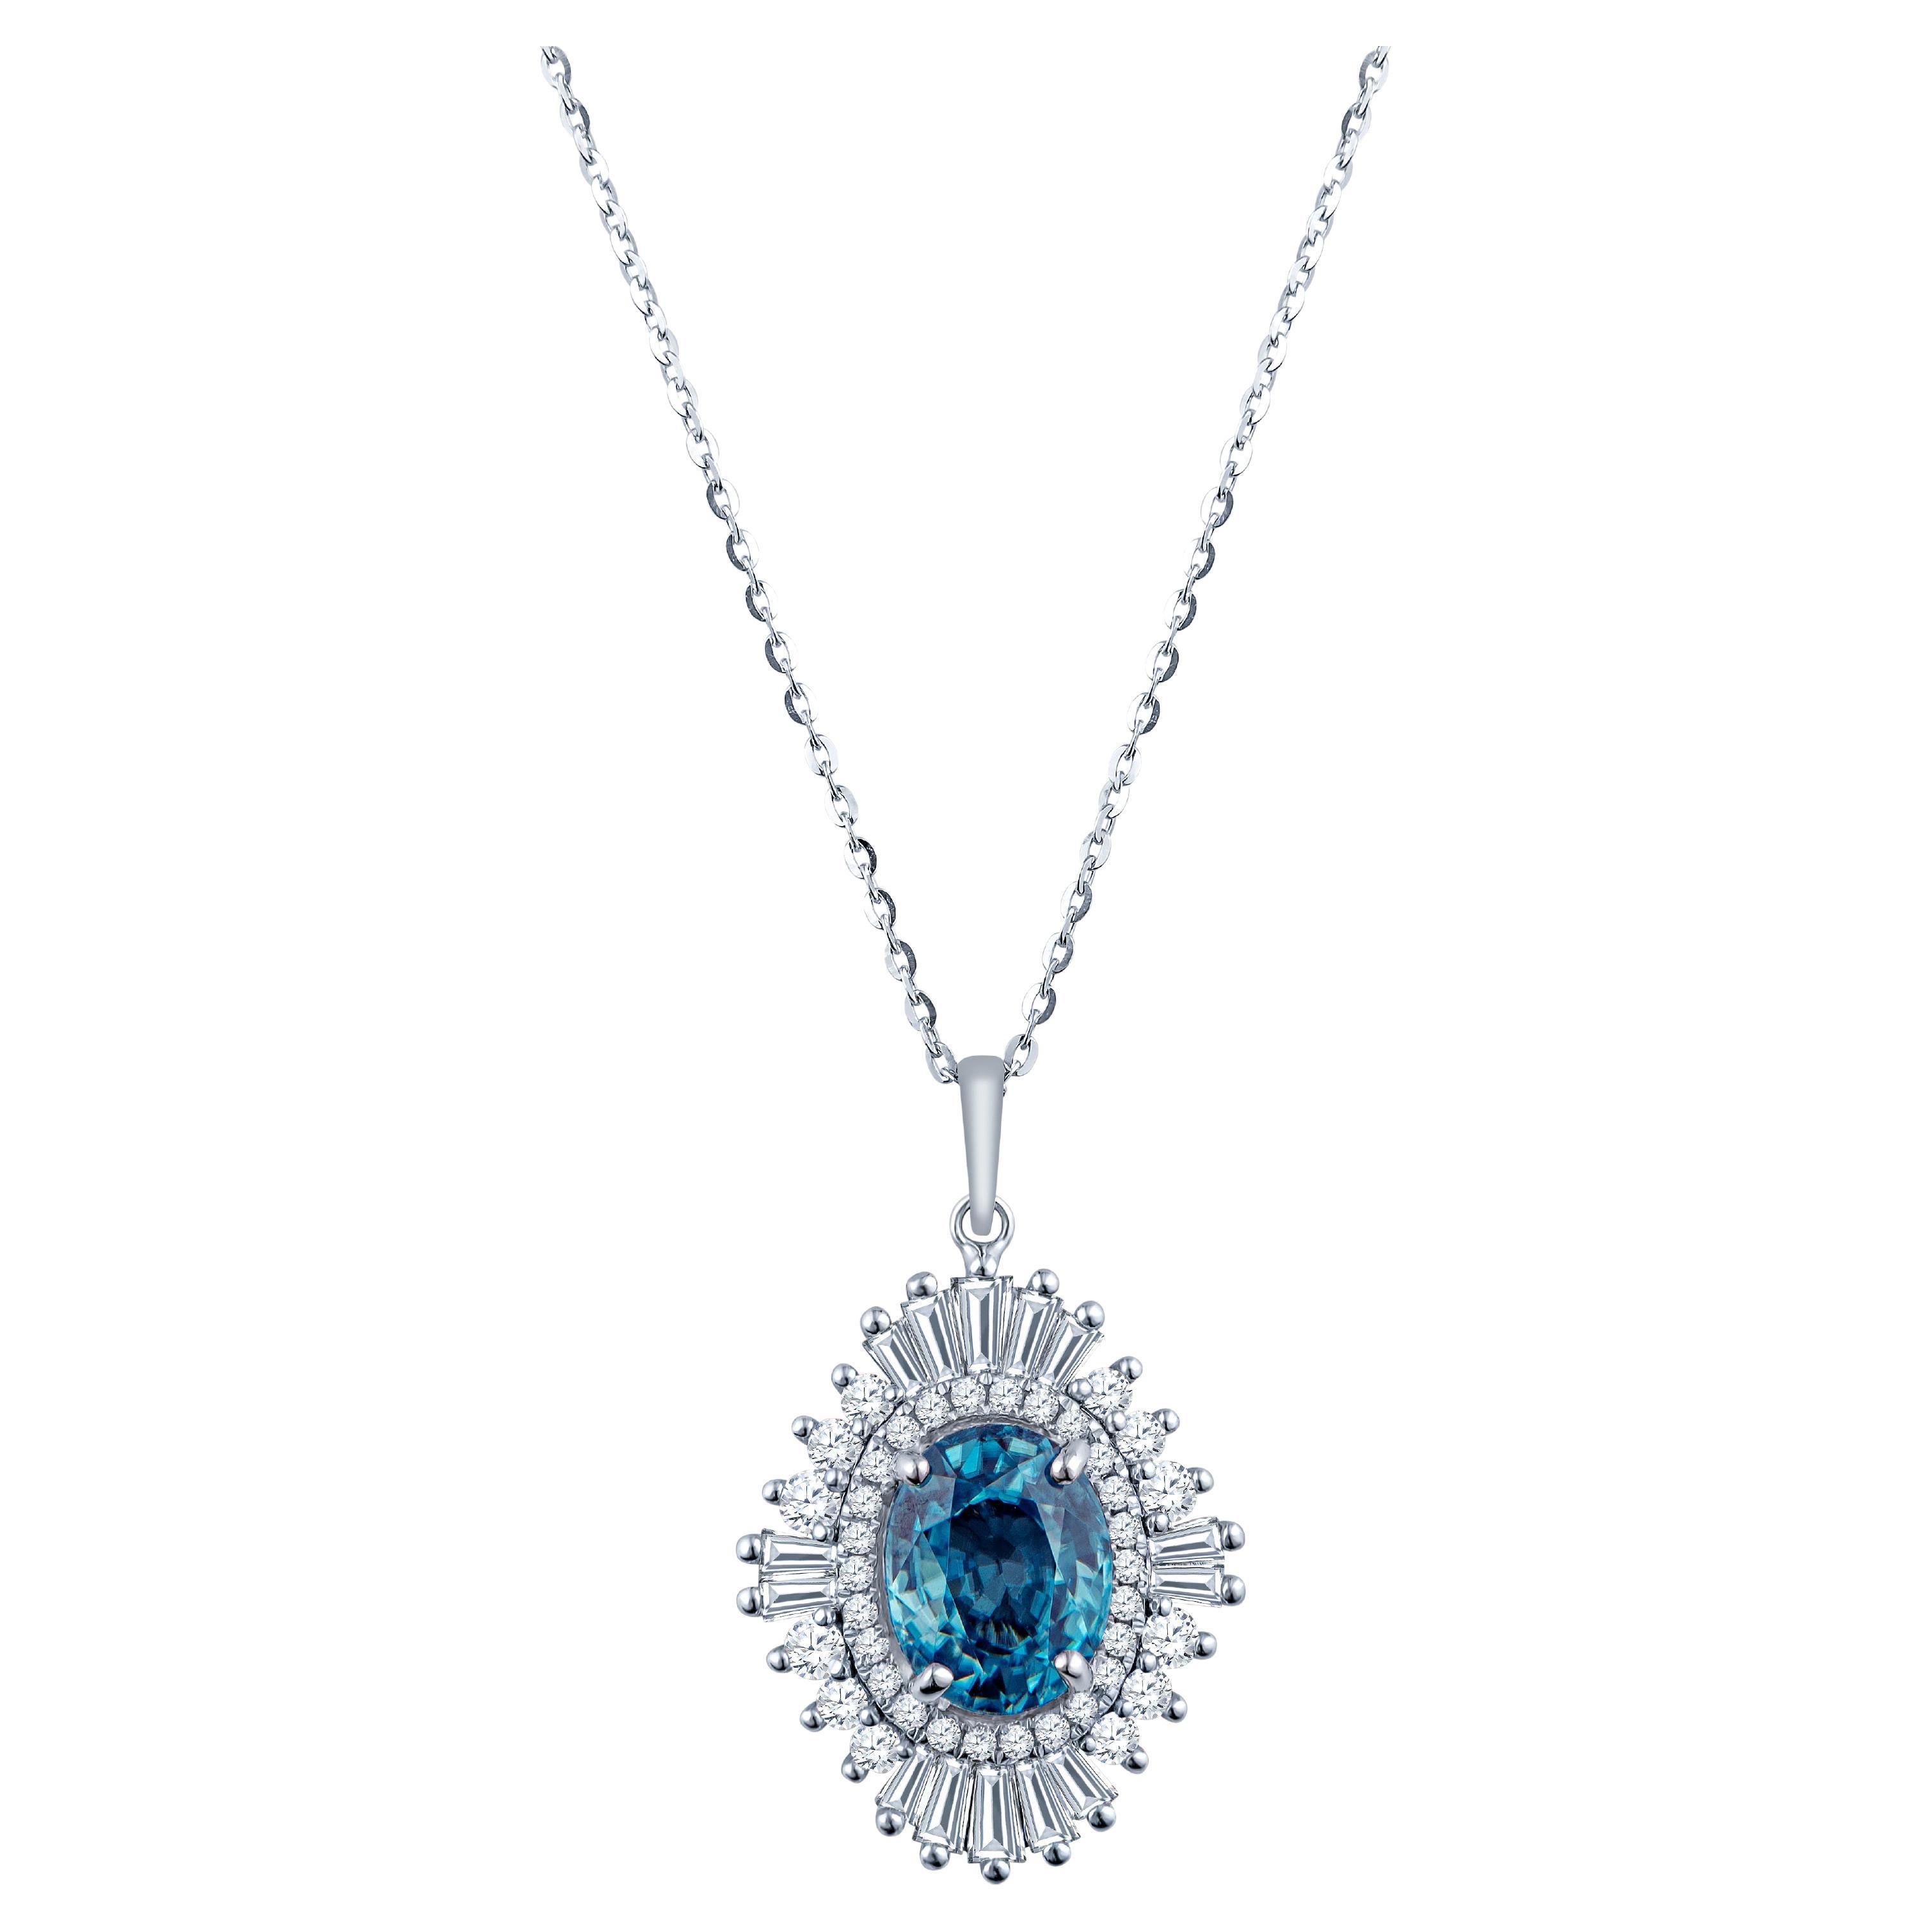 Collier pendentif en or 18 carats avec zircon bleu de taille ovale de 3,98 carats et diamants de 0,92 carat